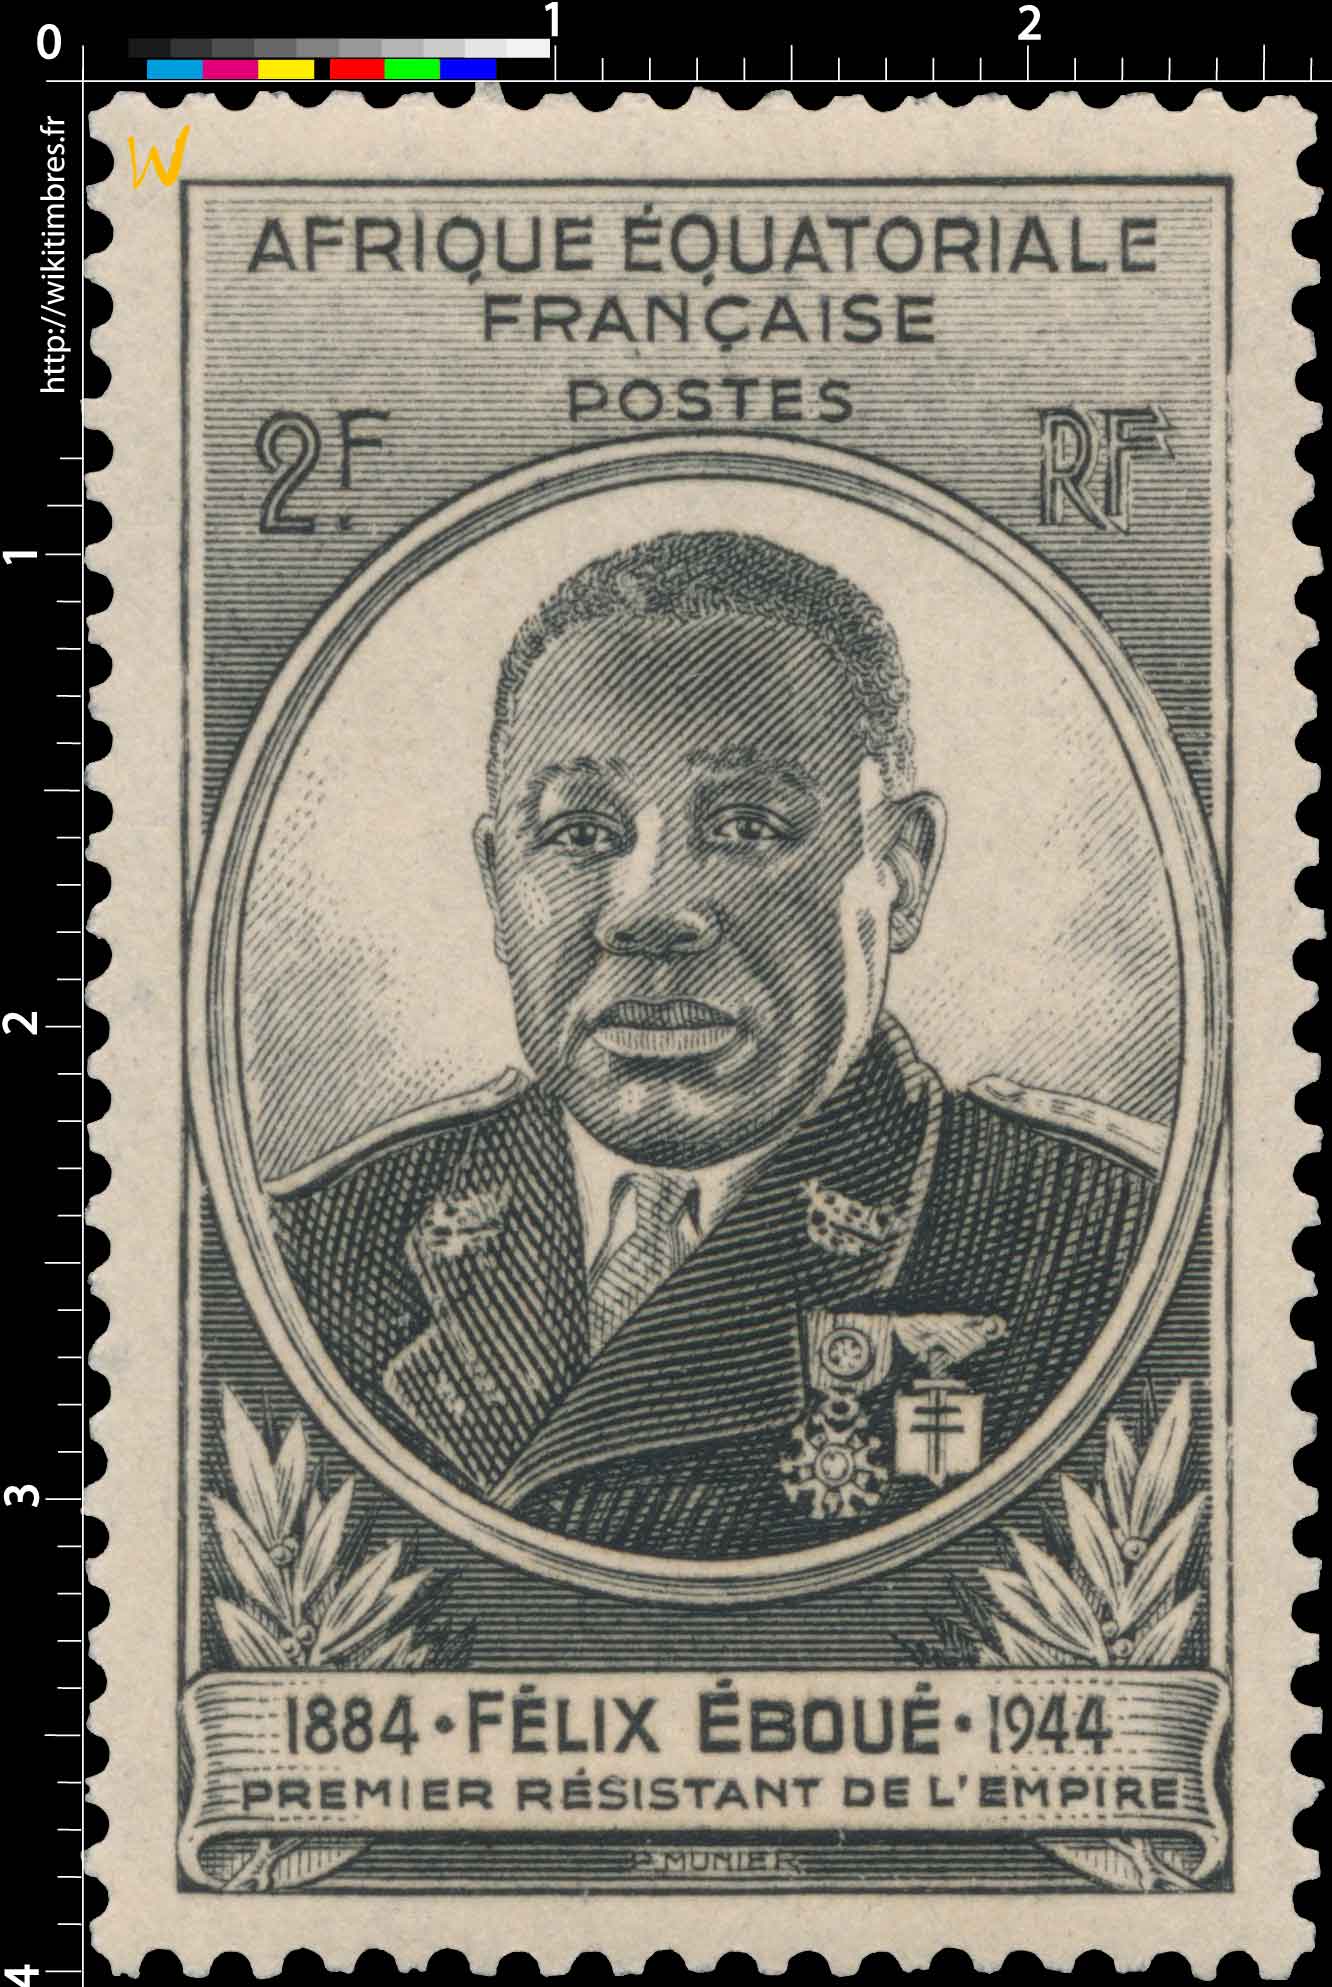 Félix Éboué 1884 1944 premier résistant de l'empire